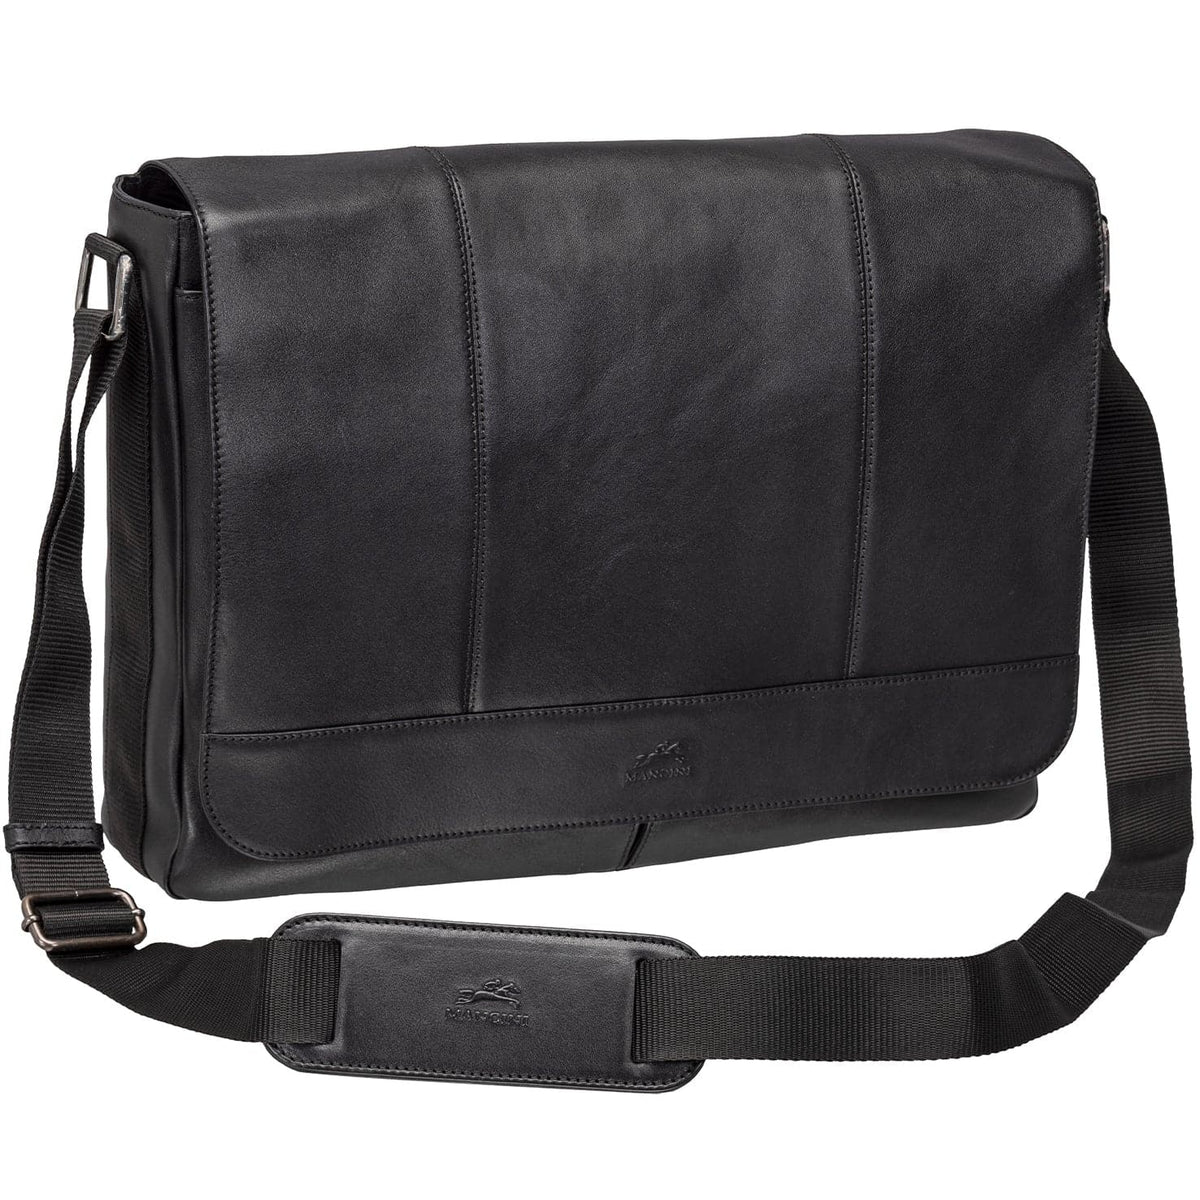 Mancini Milan Messenger Bag for 15" Laptop / Tablet